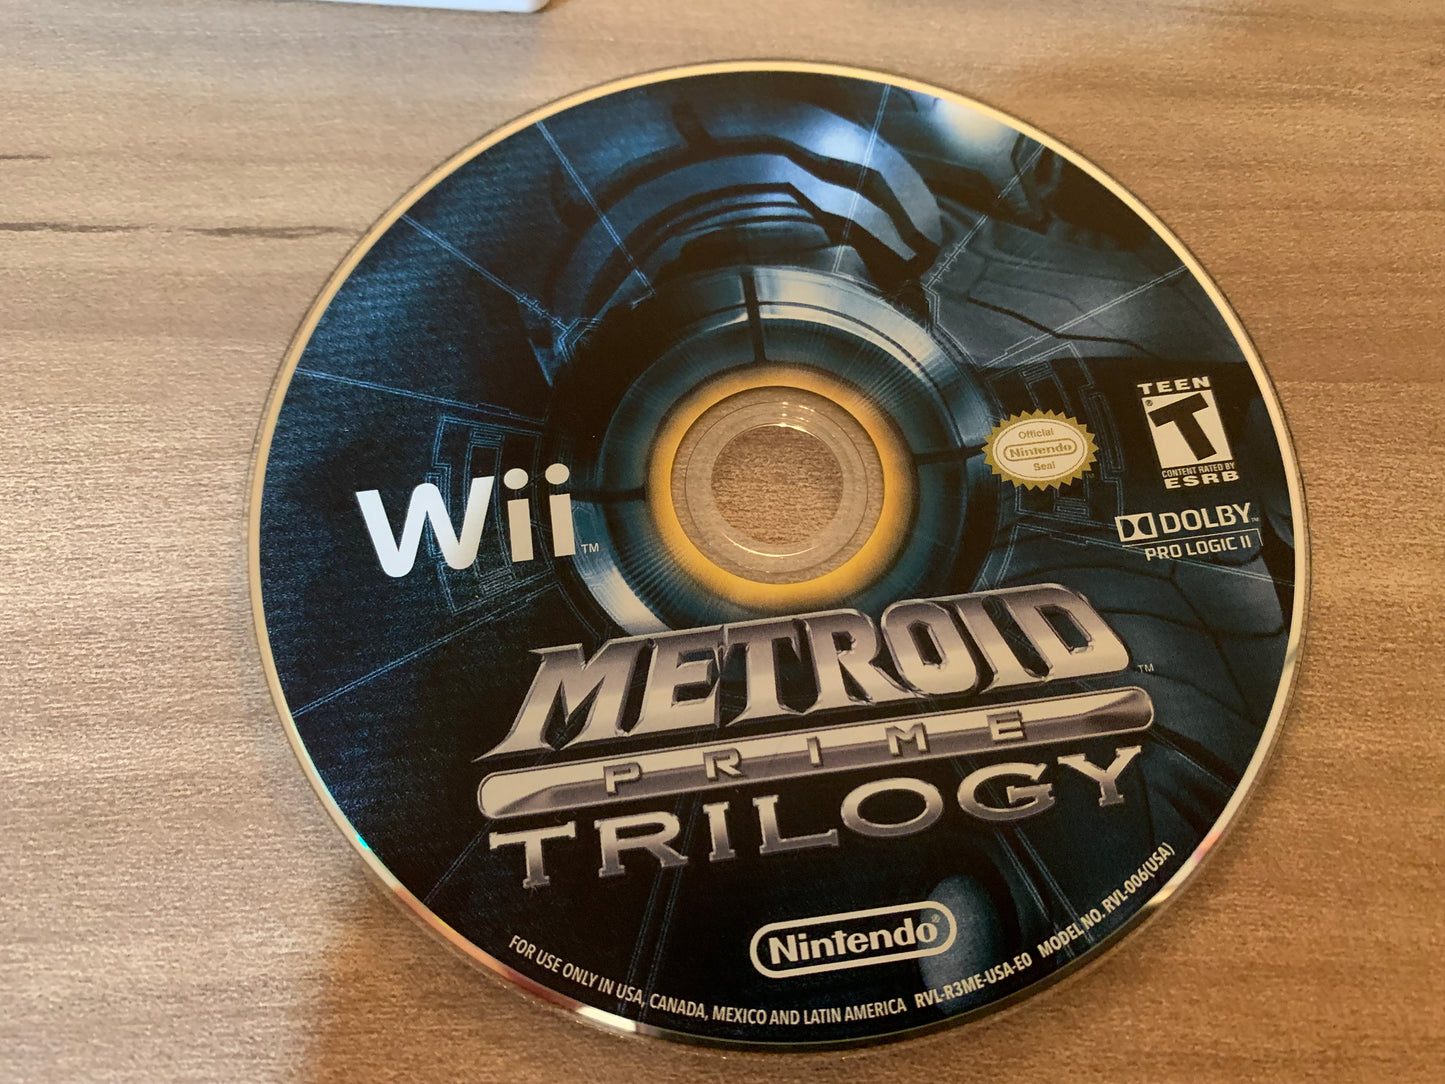 NiNTENDO Wii | METROiD PRiME TRiLOGY